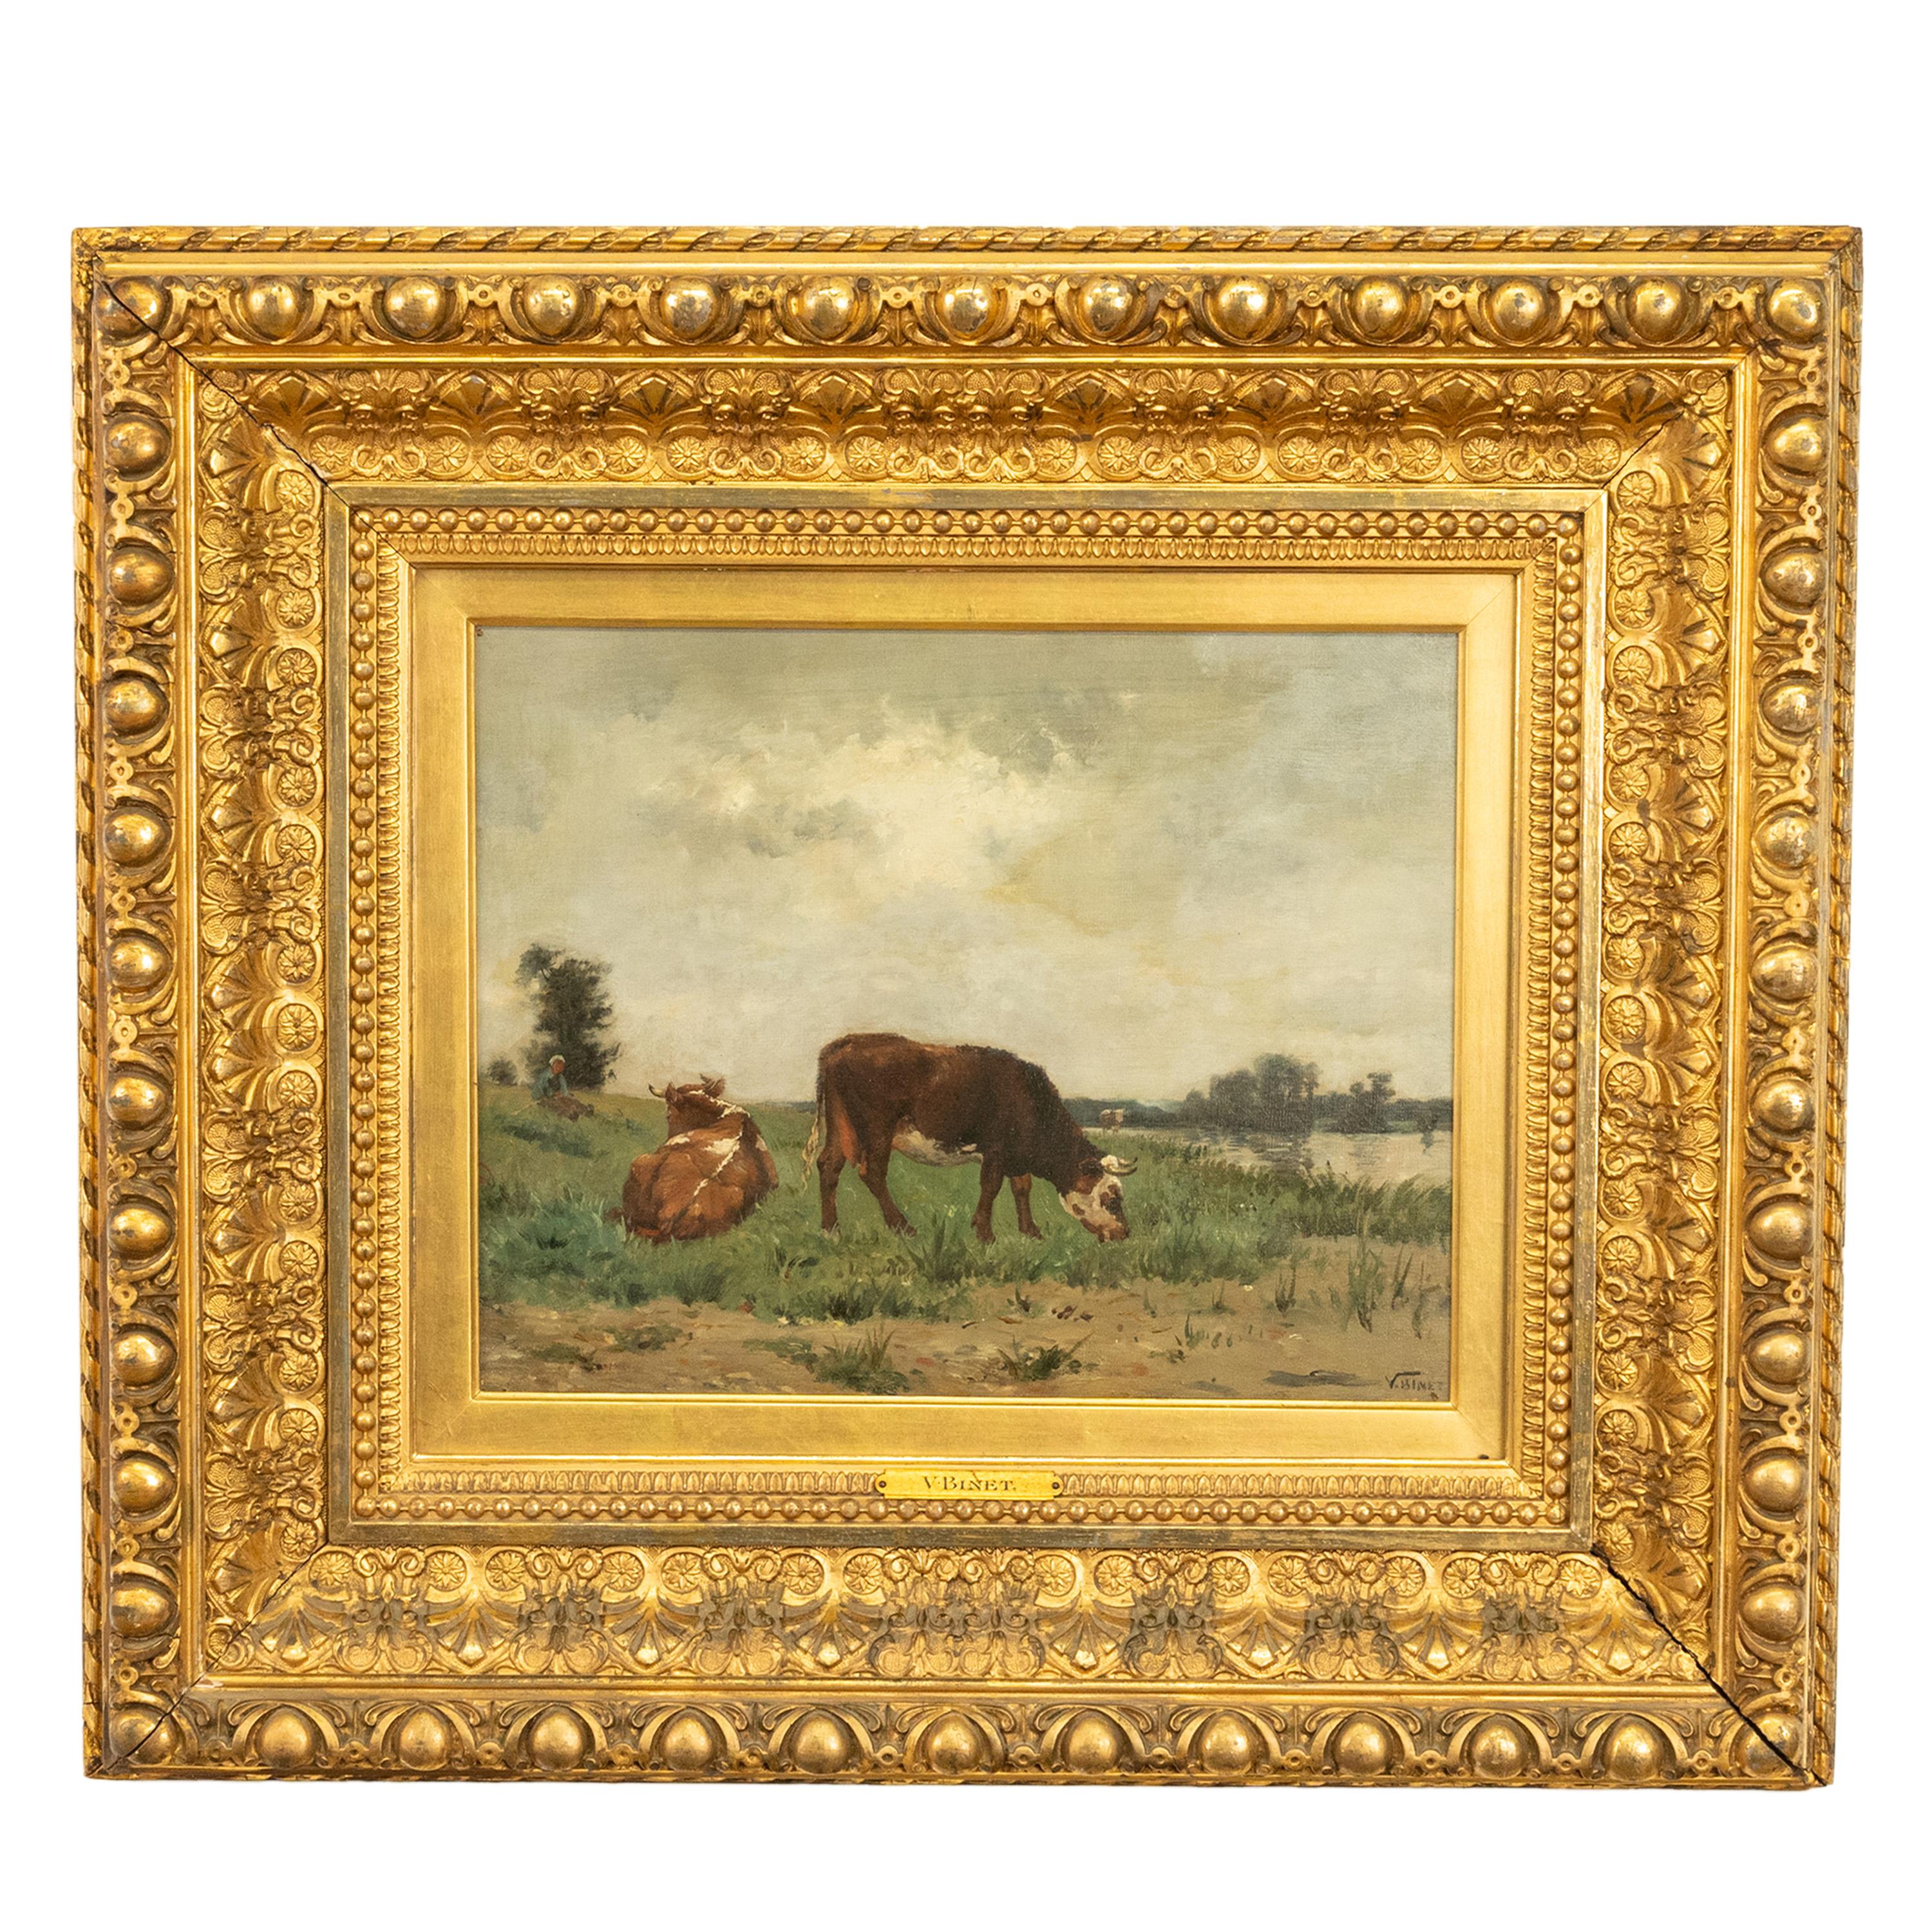 VICTOR JEAN BAPTISTE BARTHELEMY BINET 
Französisch, 1849-1924
Dieses sehr attraktive und frühe Gemälde von Binet aus der Zeit um 1875 ist der Inbegriff der späten Schule von Barbizon. Zeigt ein Paar Kühe in einer idyllischen Landschaft, eine grasend